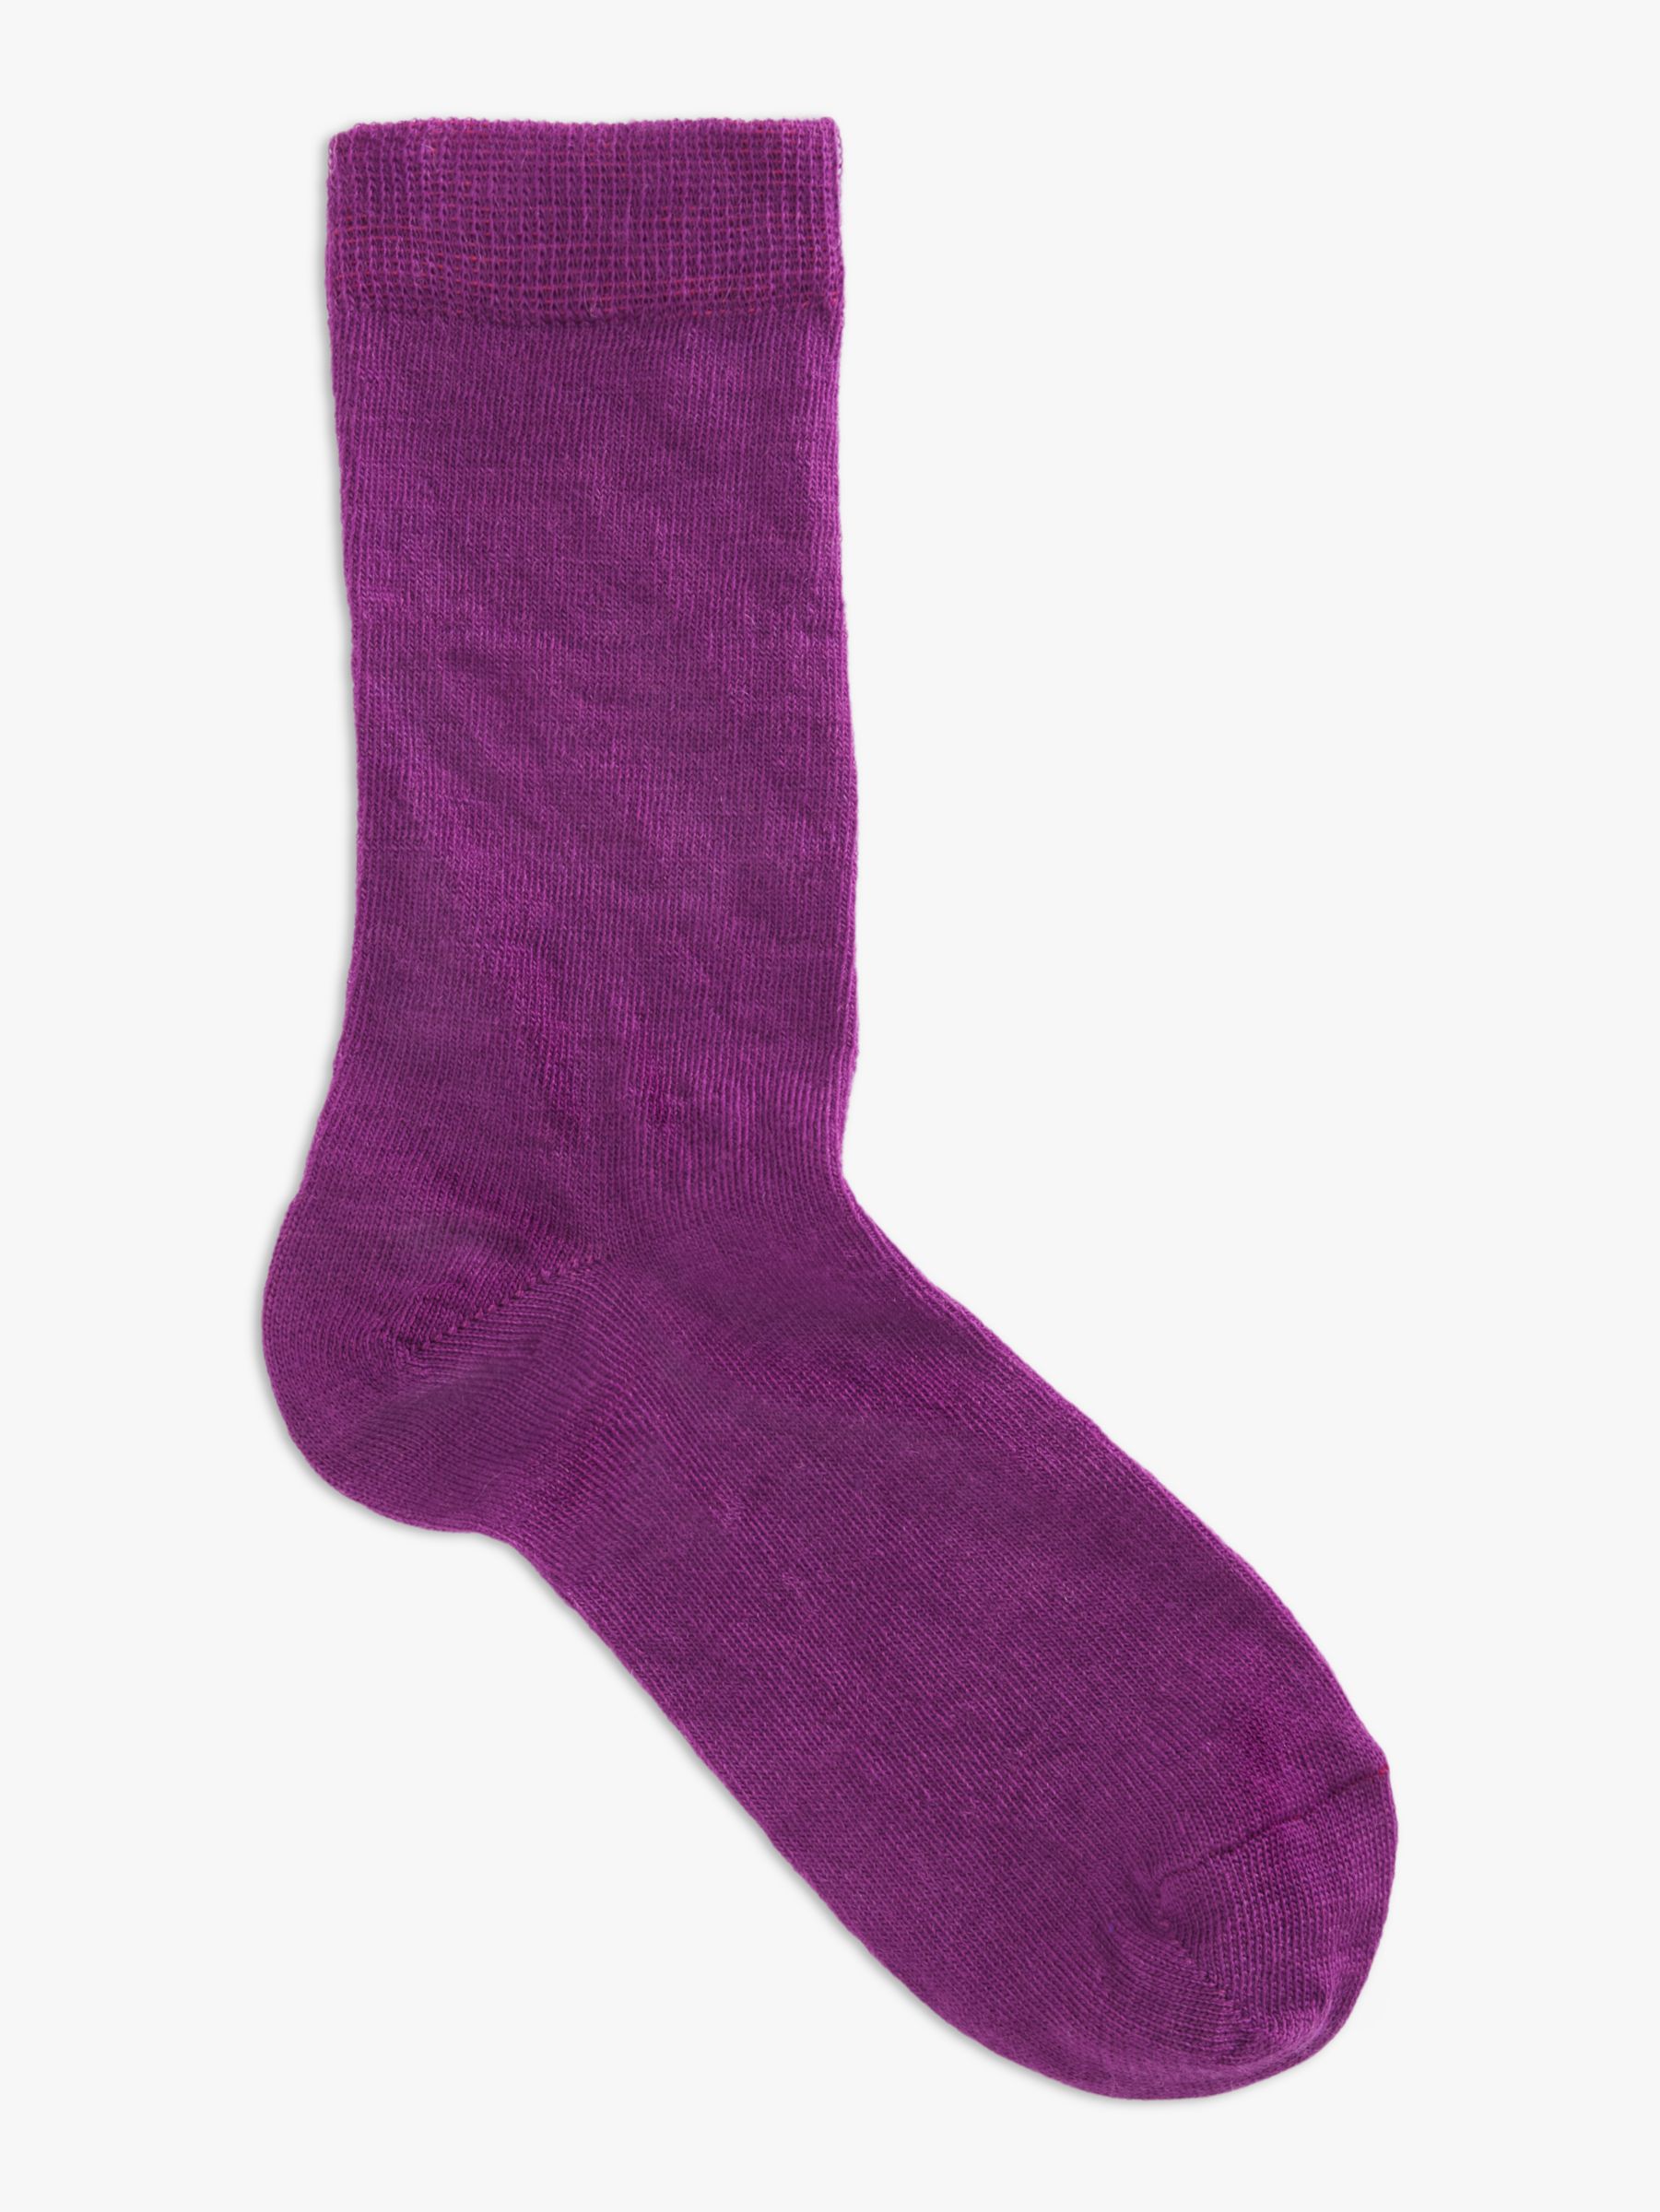 John Lewis Merino Wool Mix Ankle Socks, Pack of 2, Lilac at John Lewis ...